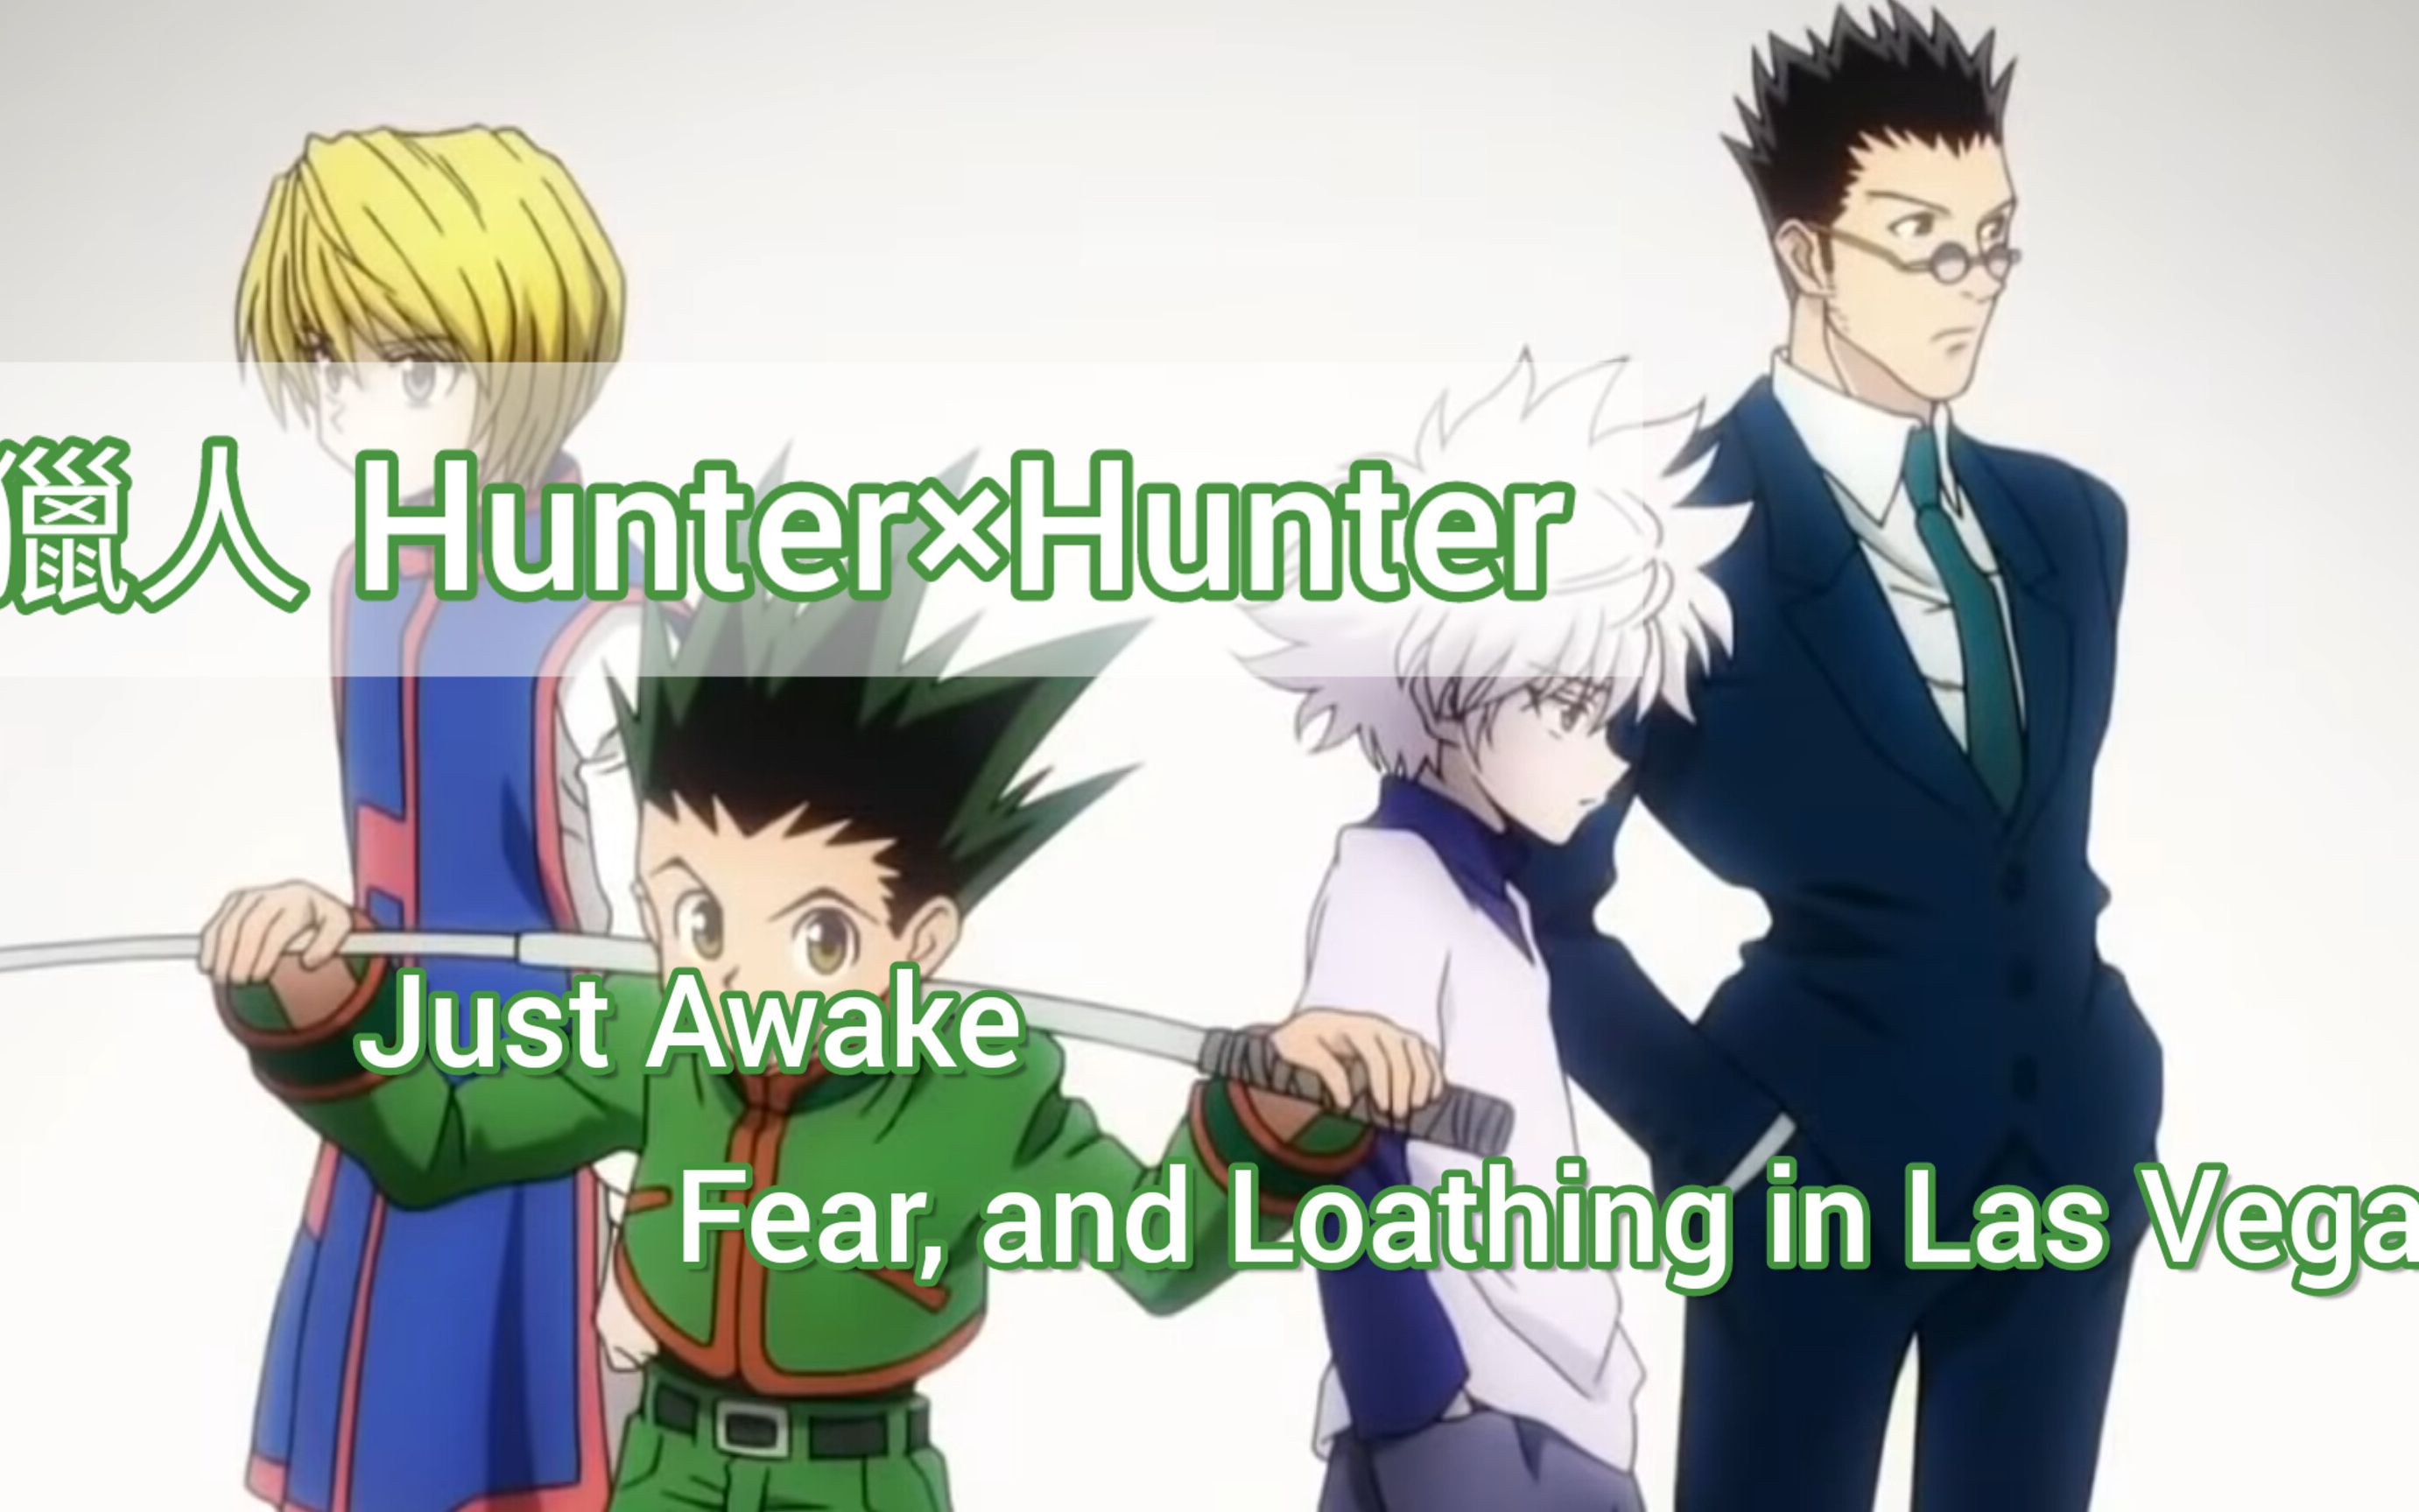 [图]【獵人 Hunter × Hunter】ed Just Awake/Fear, and Loathing in Las Vegas